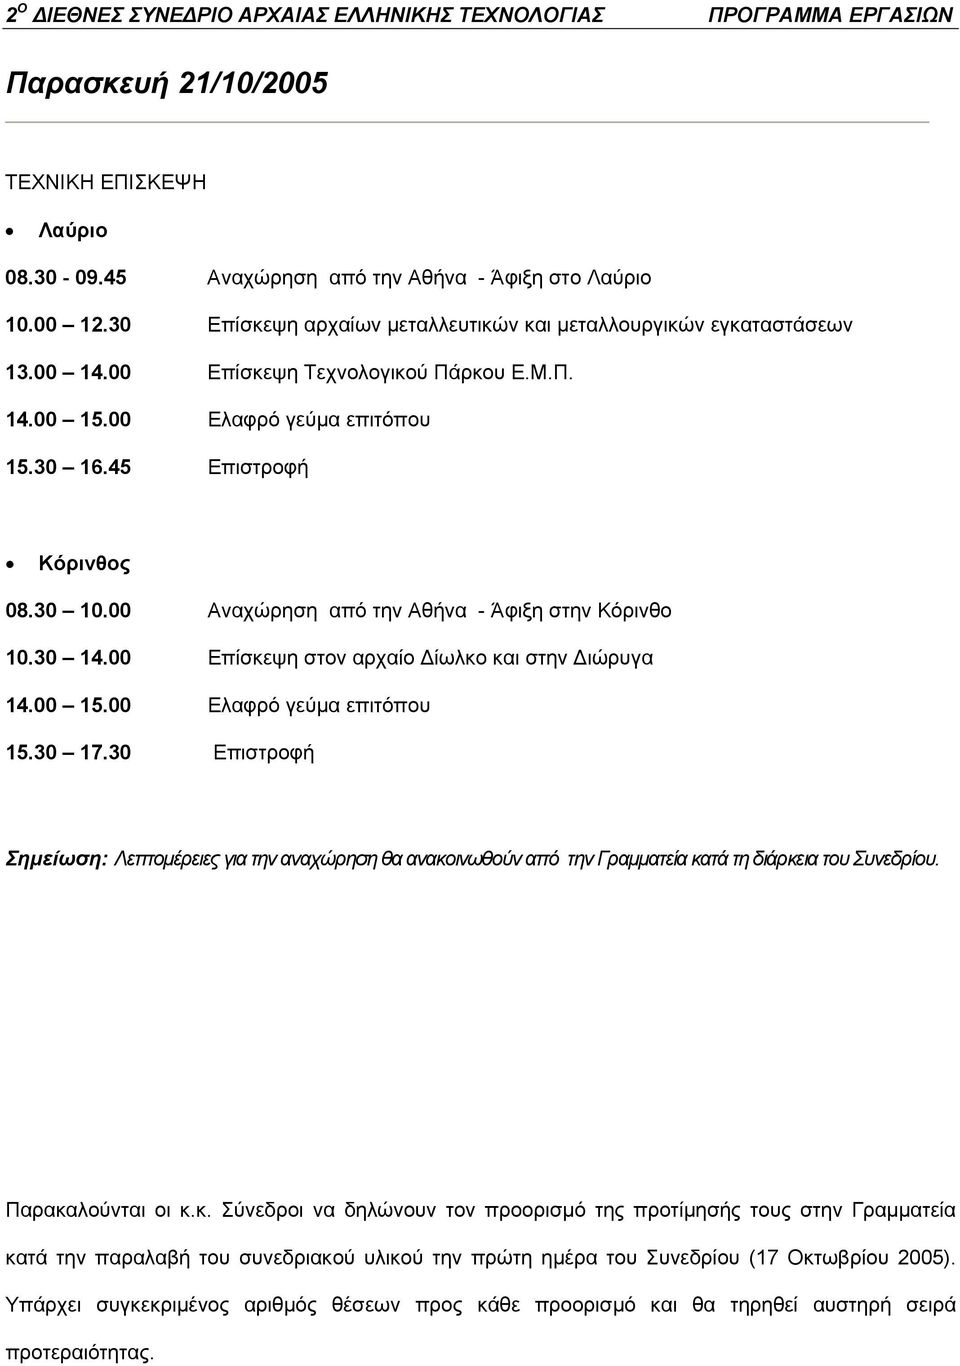 00 Επίσκεψη στον αρχαίο Δίωλκο και στην Διώρυγα 14.00 15.00 Ελαφρό γεύμα επιτόπου 15.30 17.